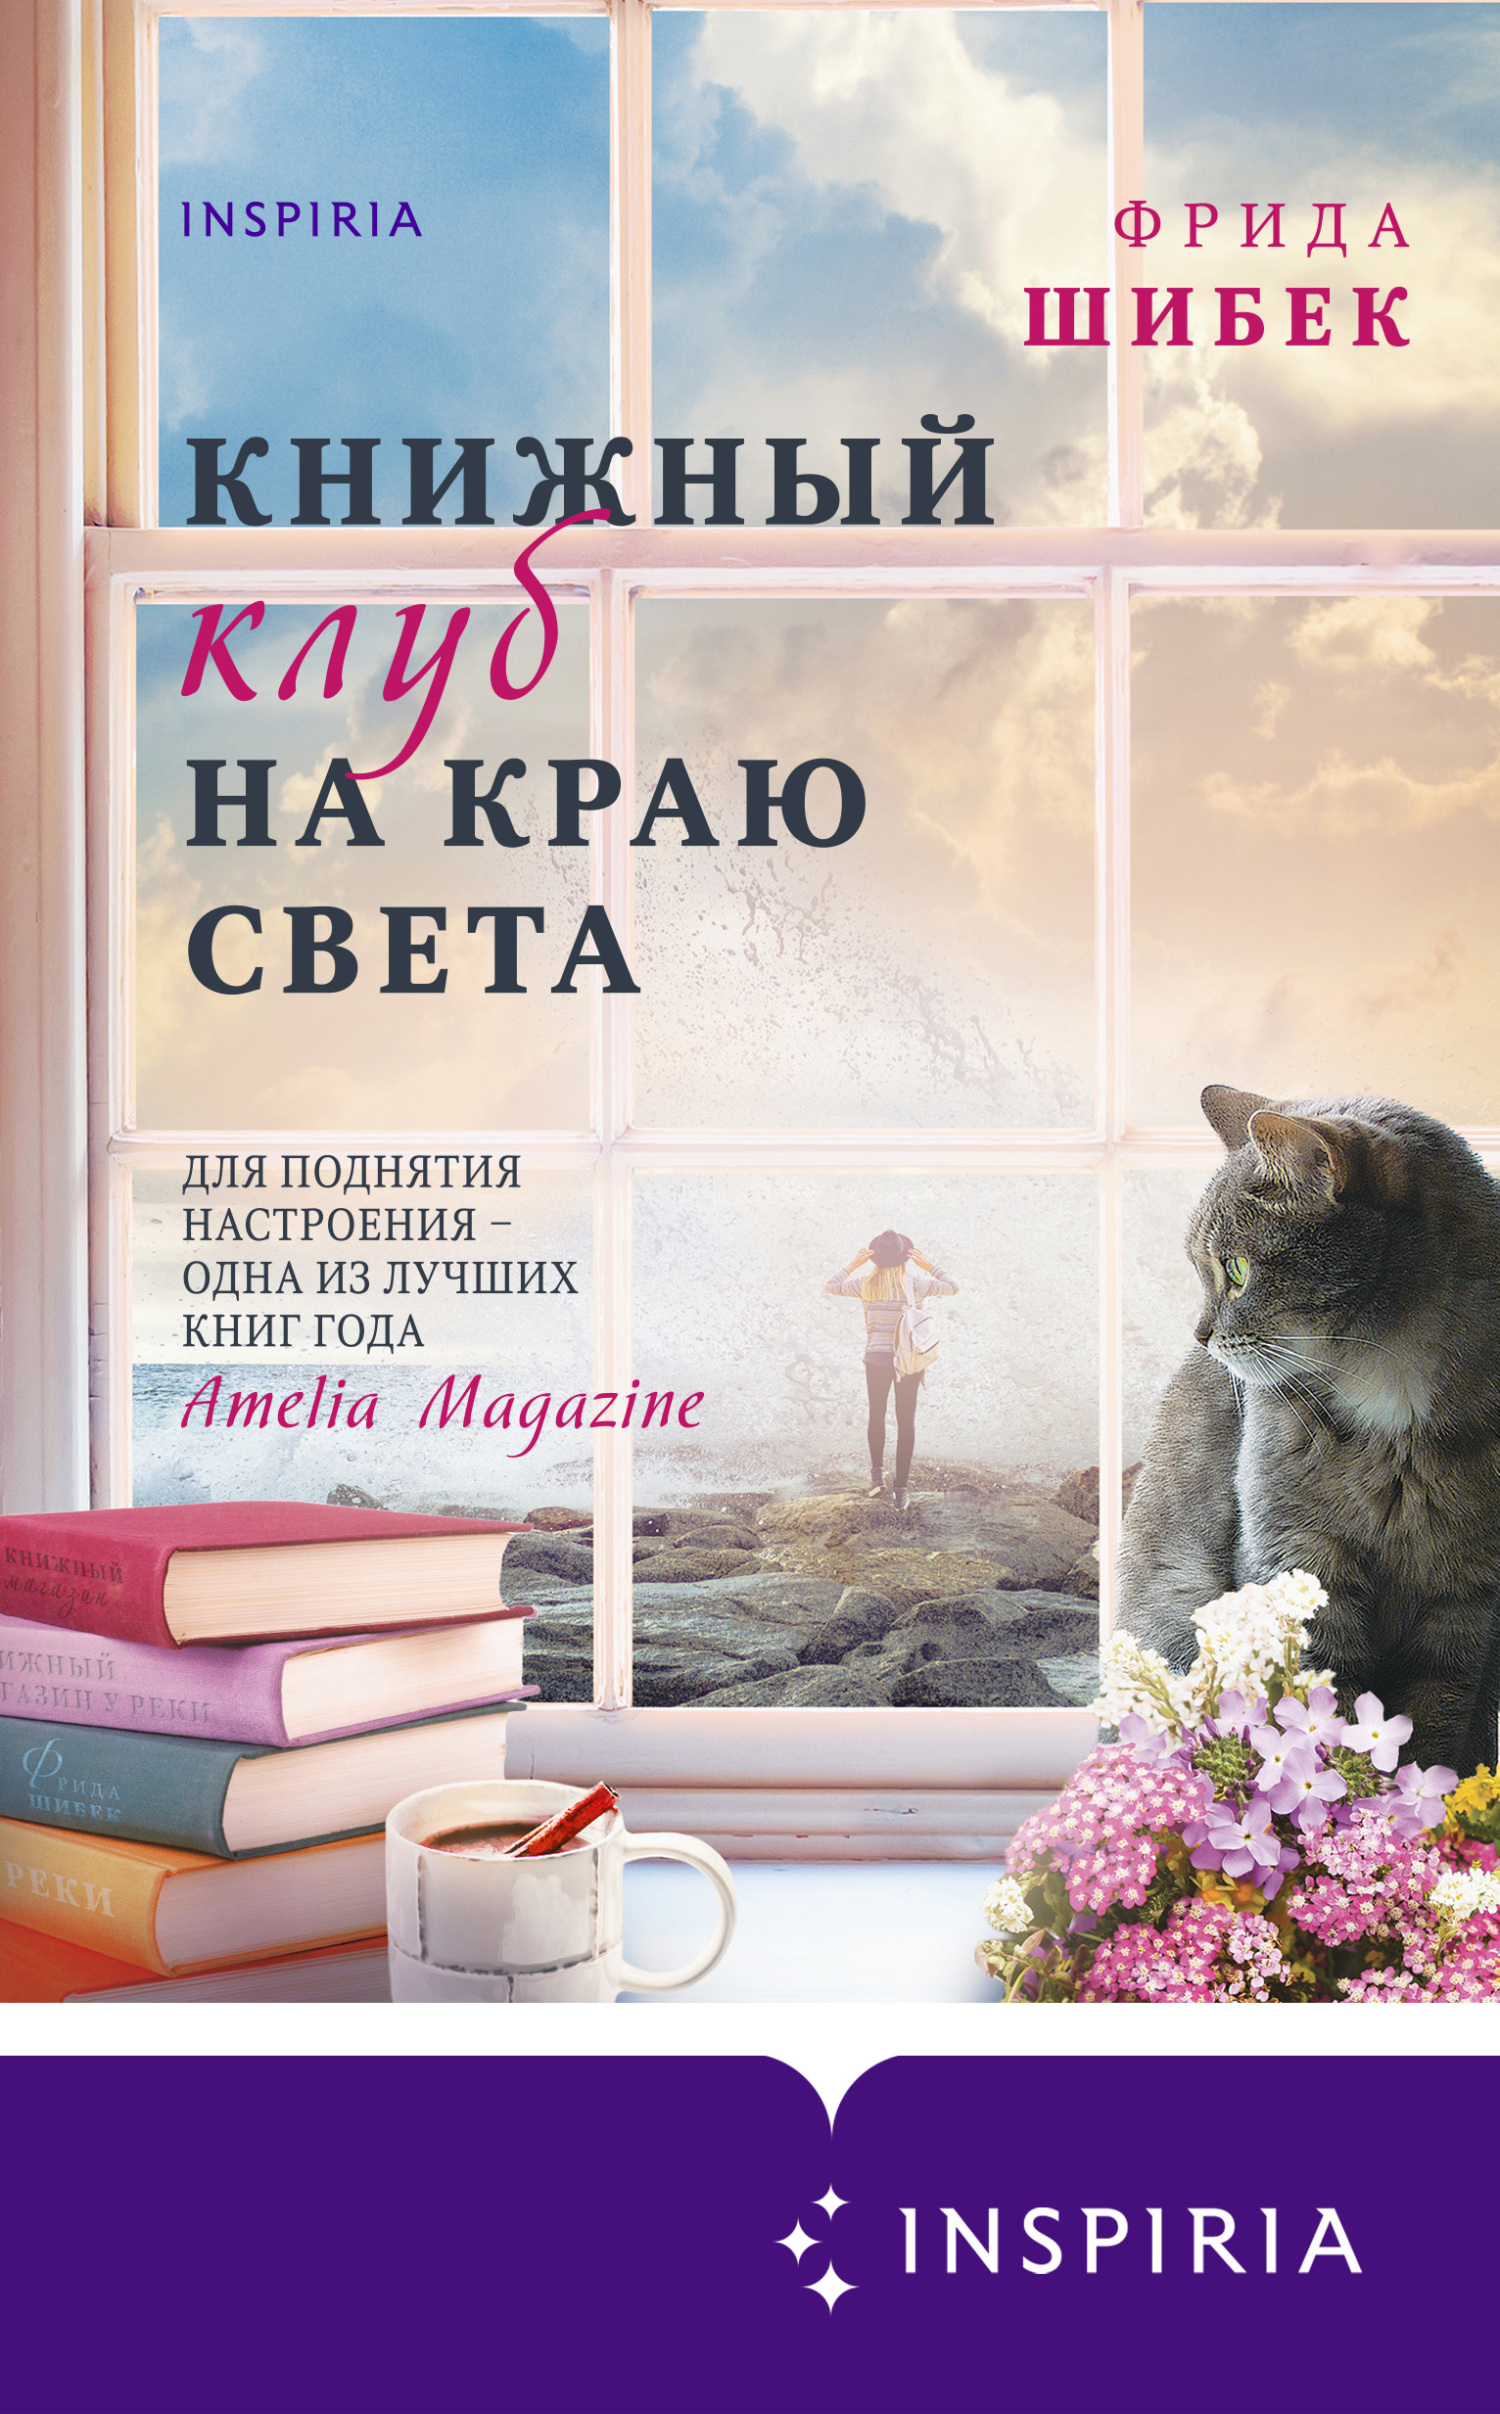 Книжный клуб на краю света - Фрида Шибек